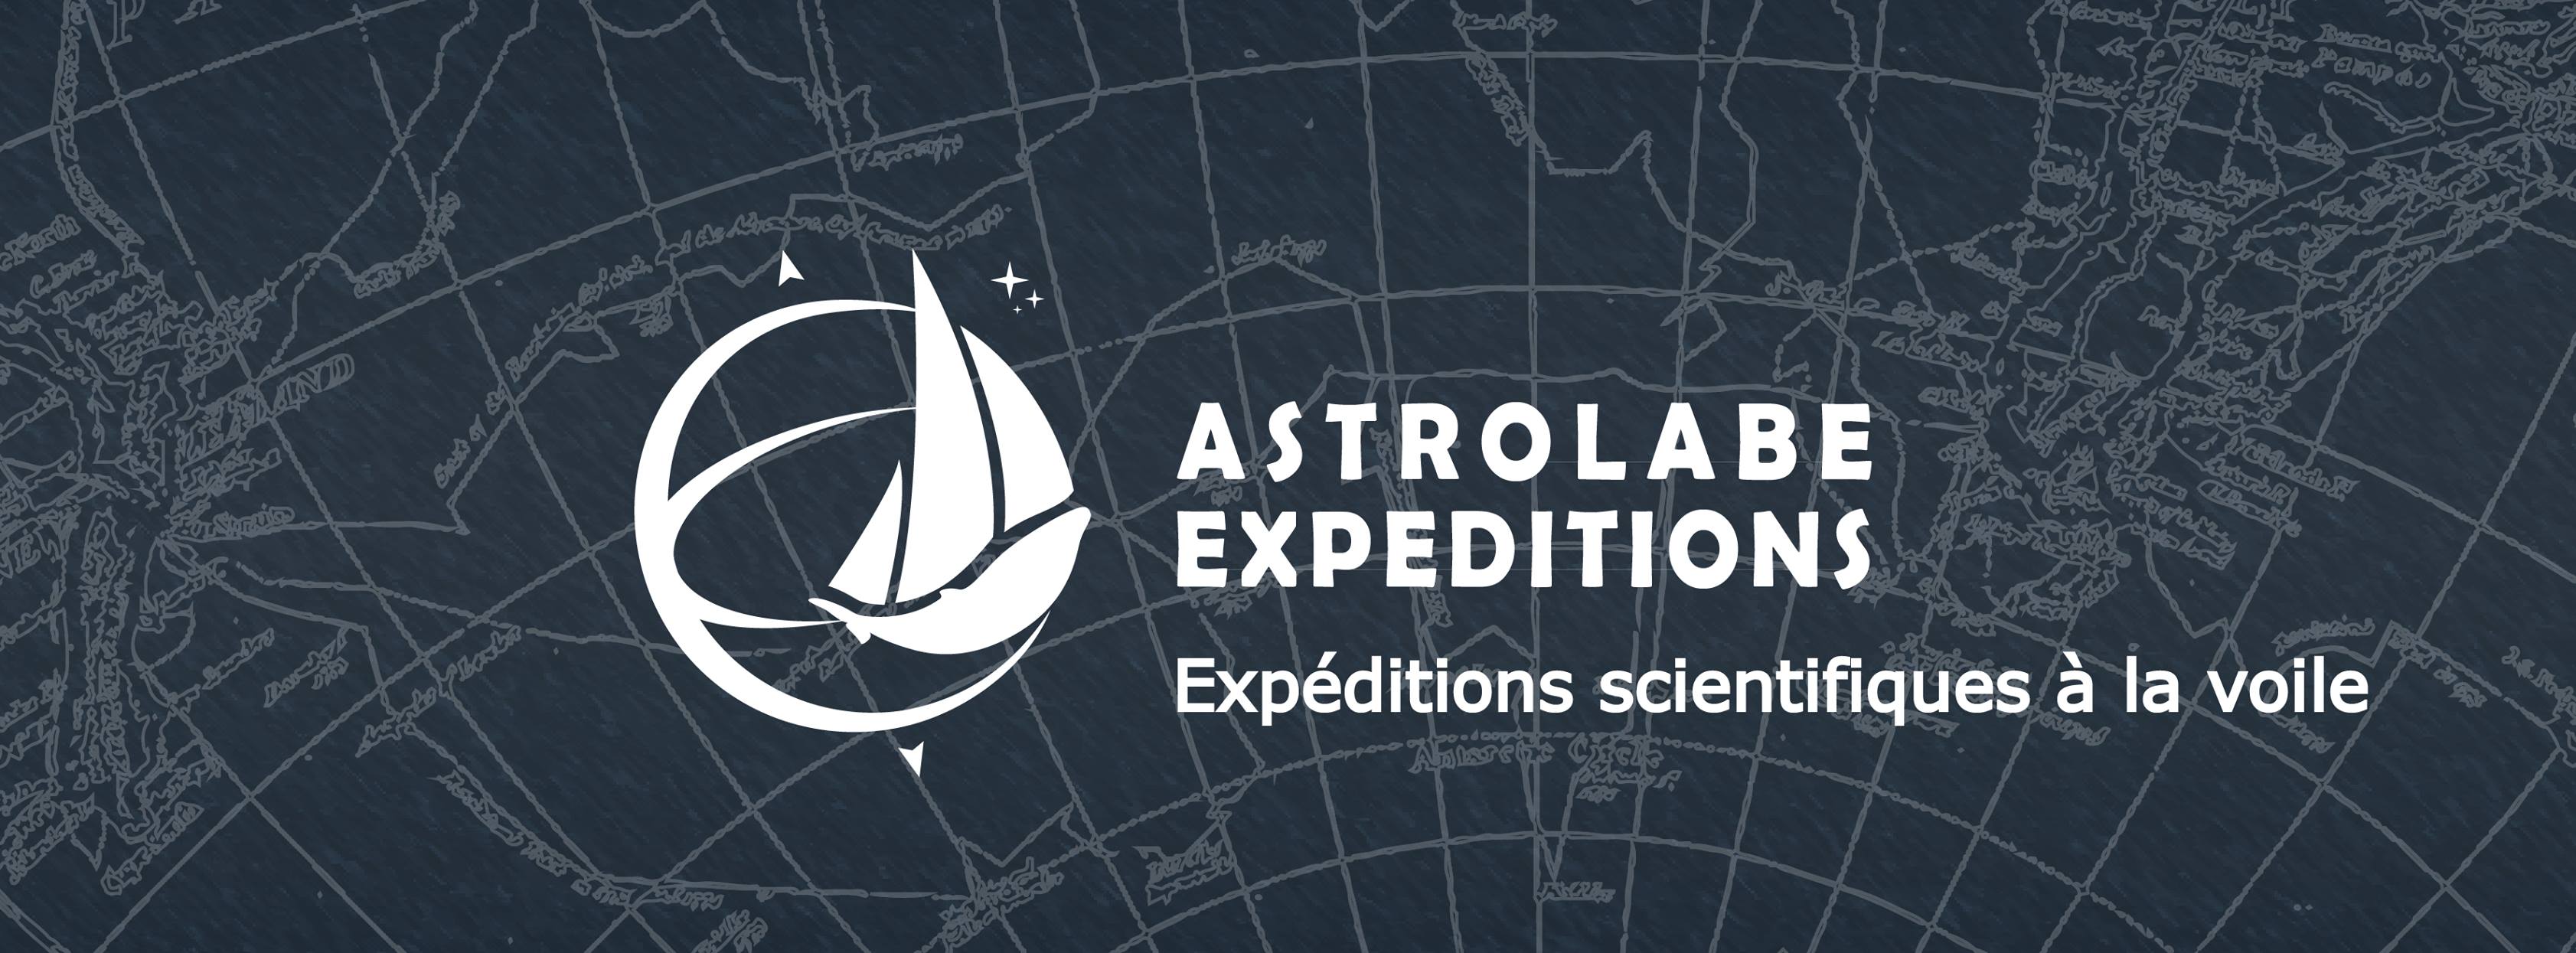 Offres de 7 Postes de responsables de projets chez Astrolabe expéditions !